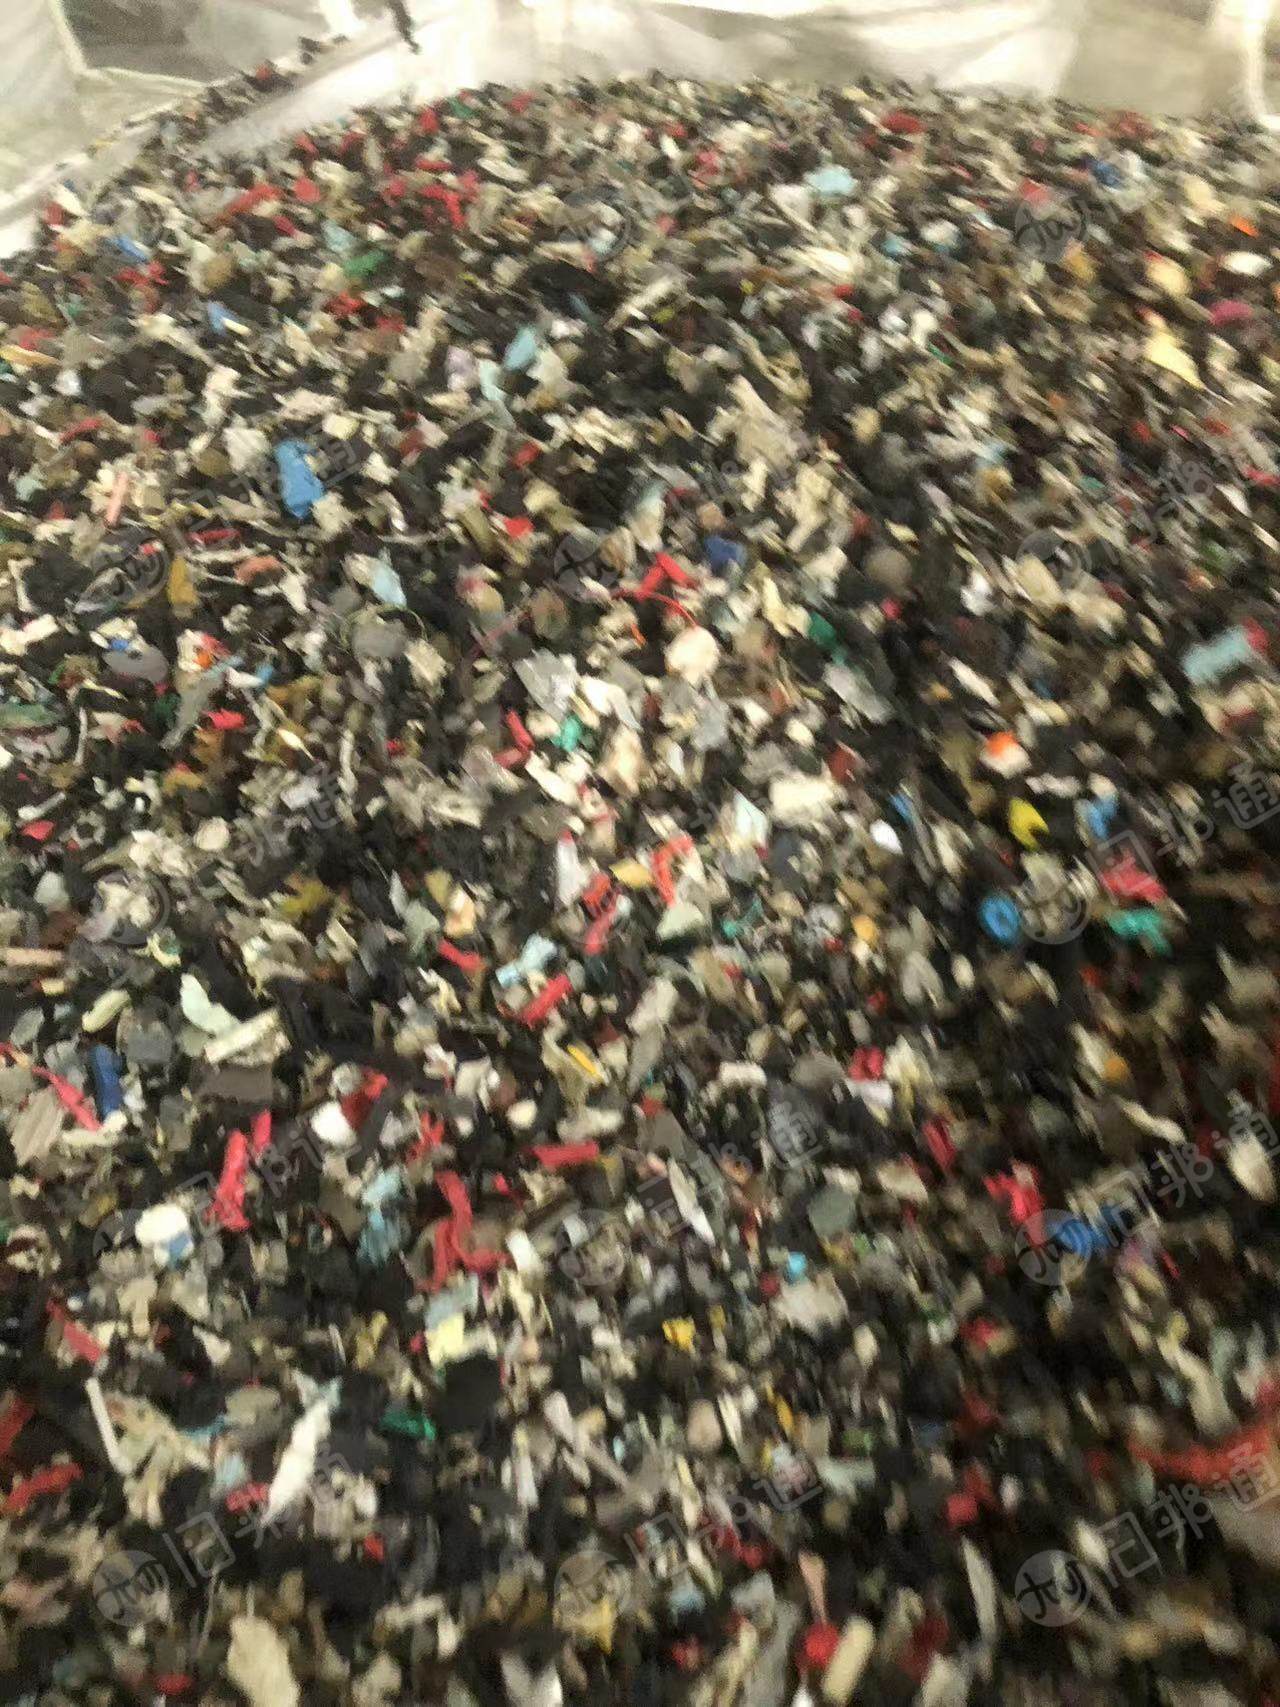  杂橡胶废料，长期出售